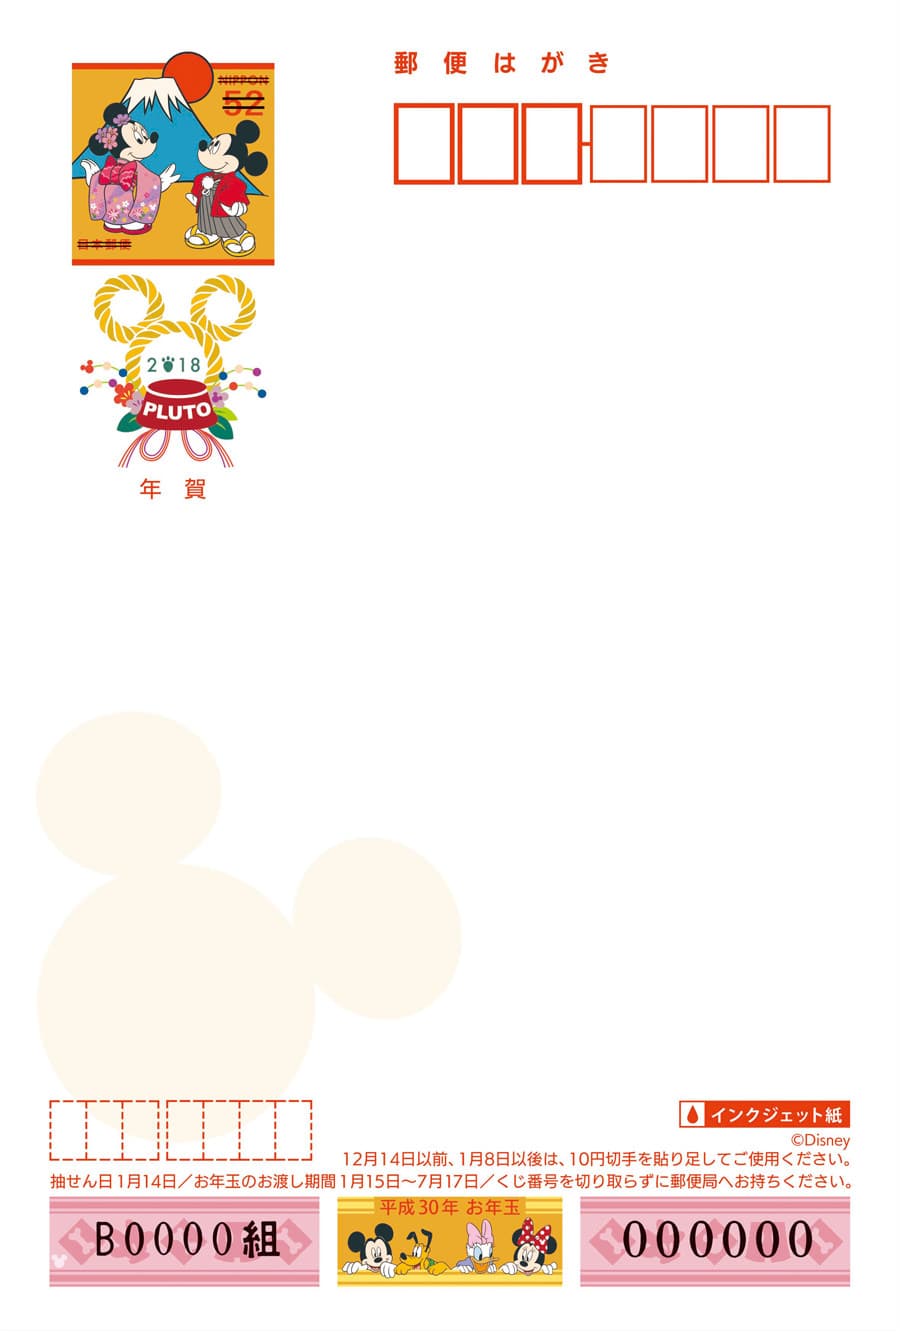 いラインアップ 使用済切手 ディズニー 2019 年賀状 150枚 コレクション